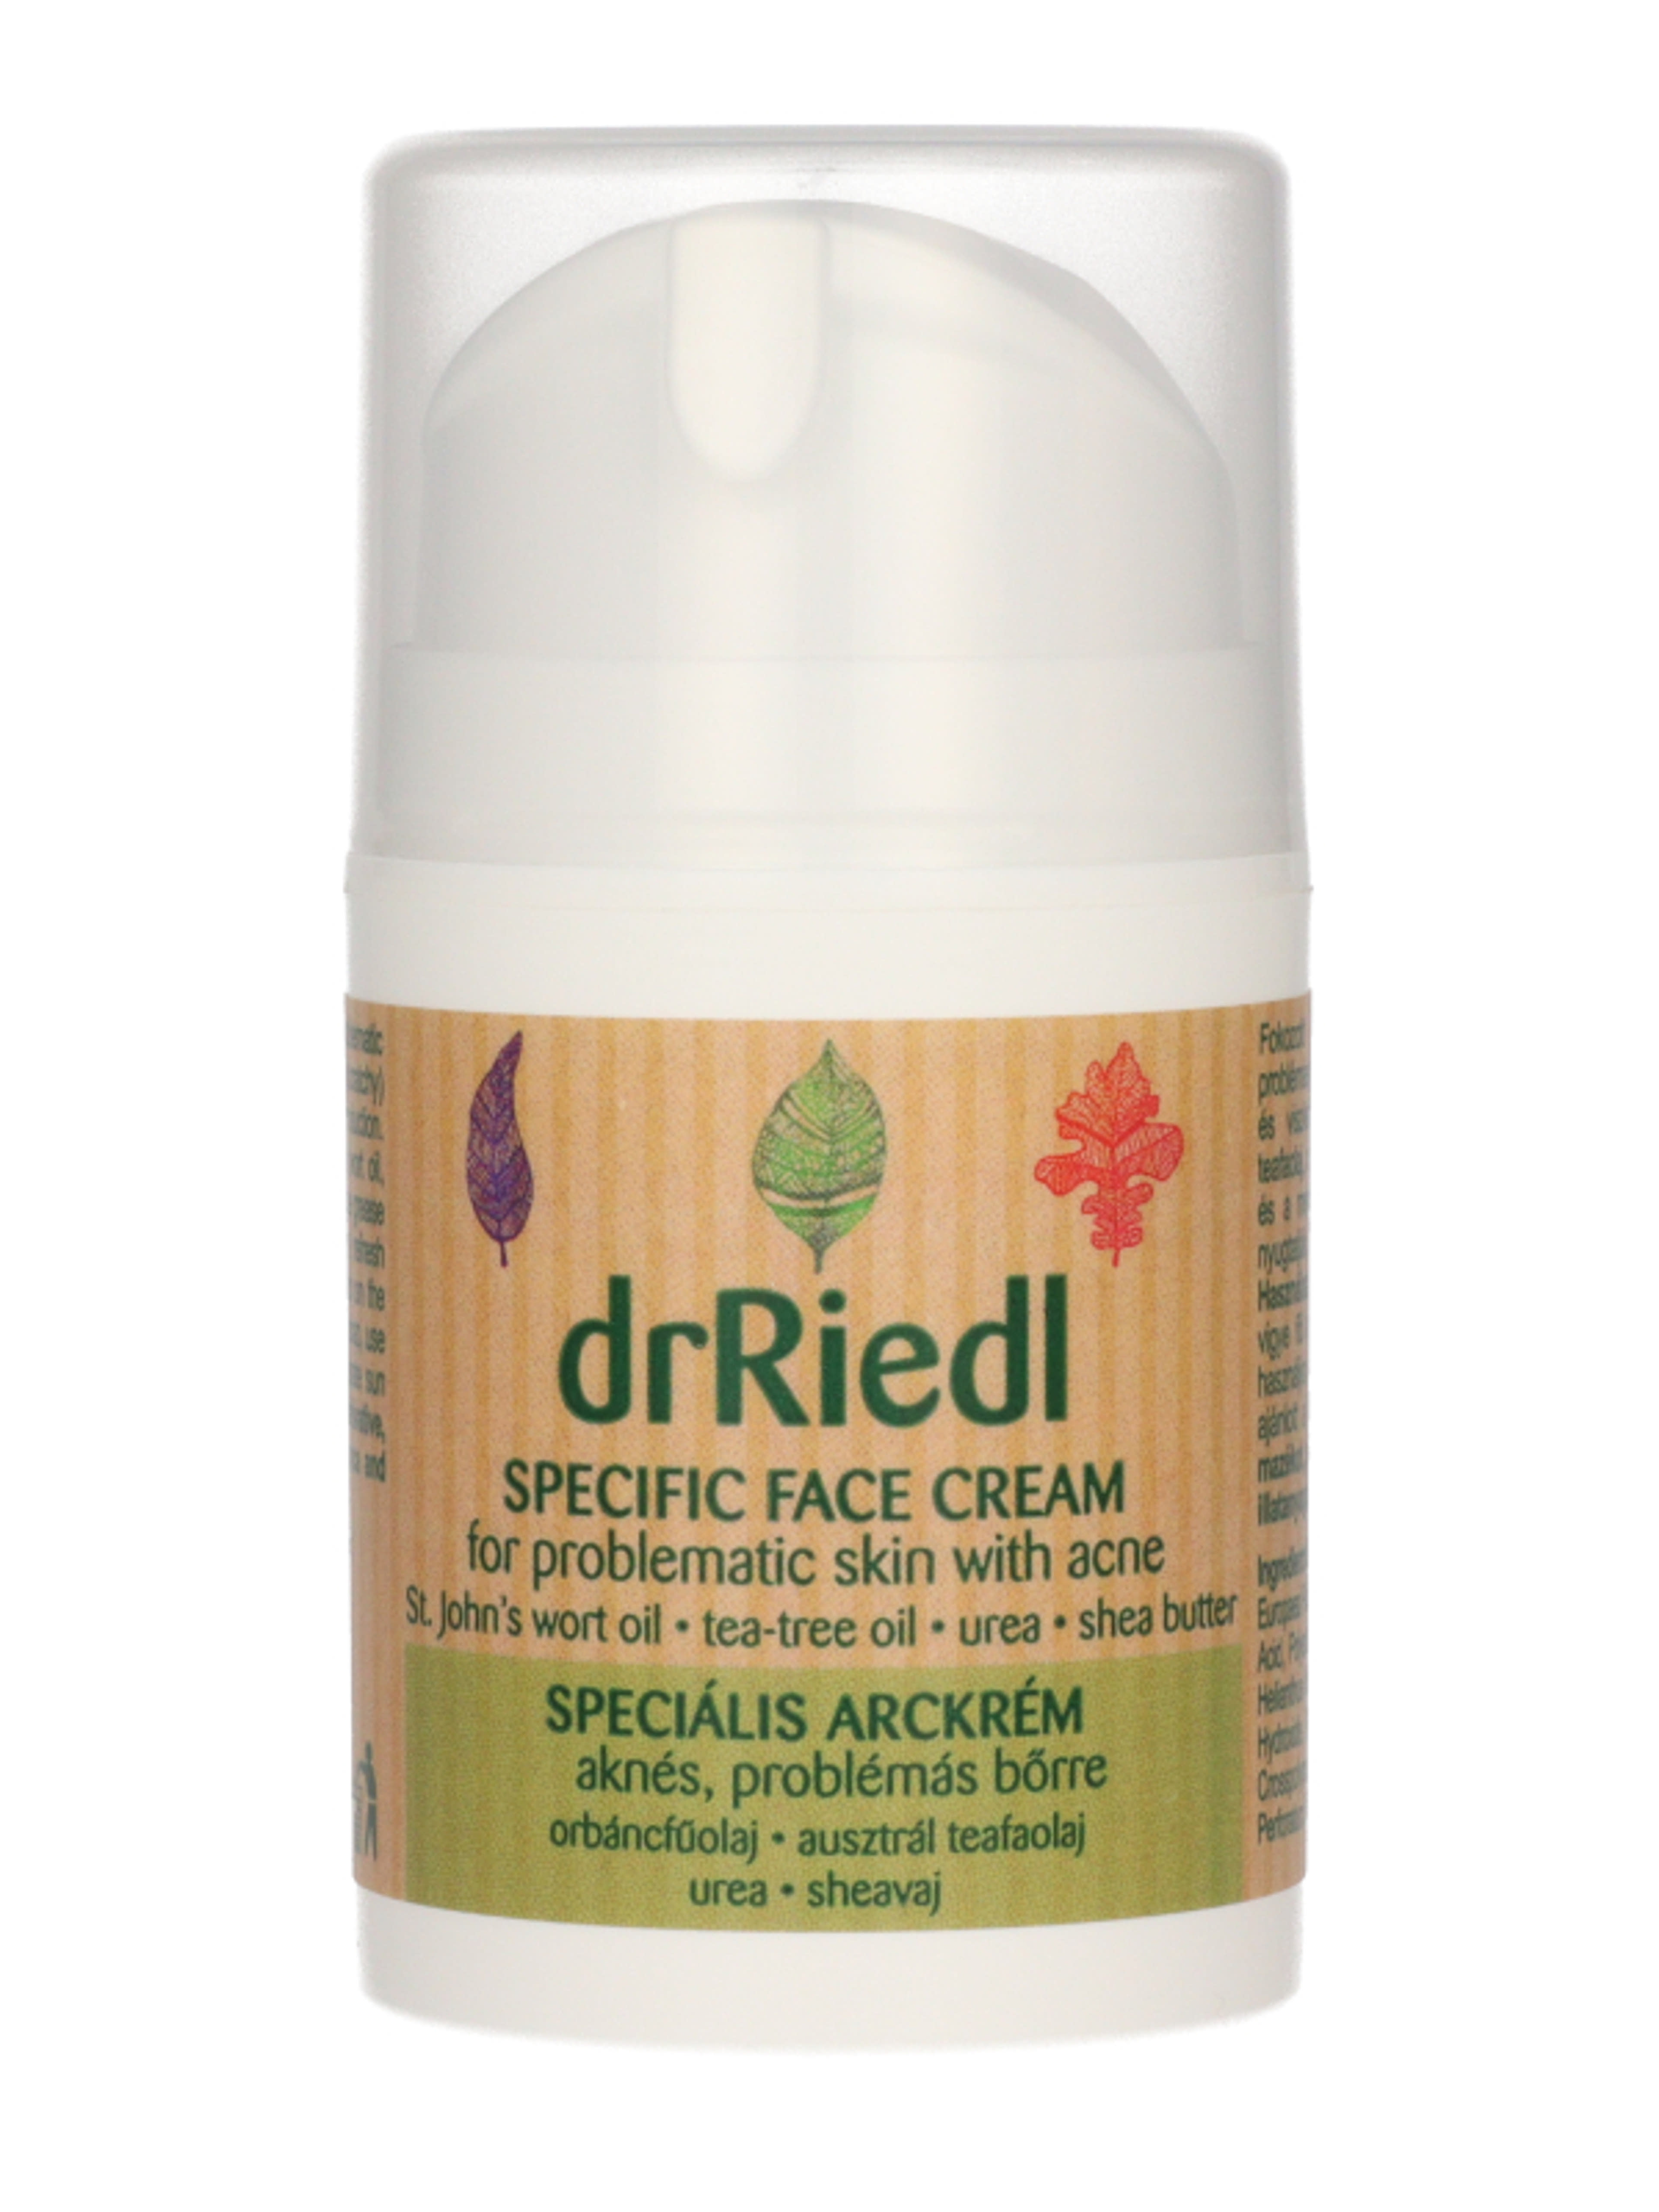 drRiedl speciális arckrém problémás bőrre - 50 ml-3